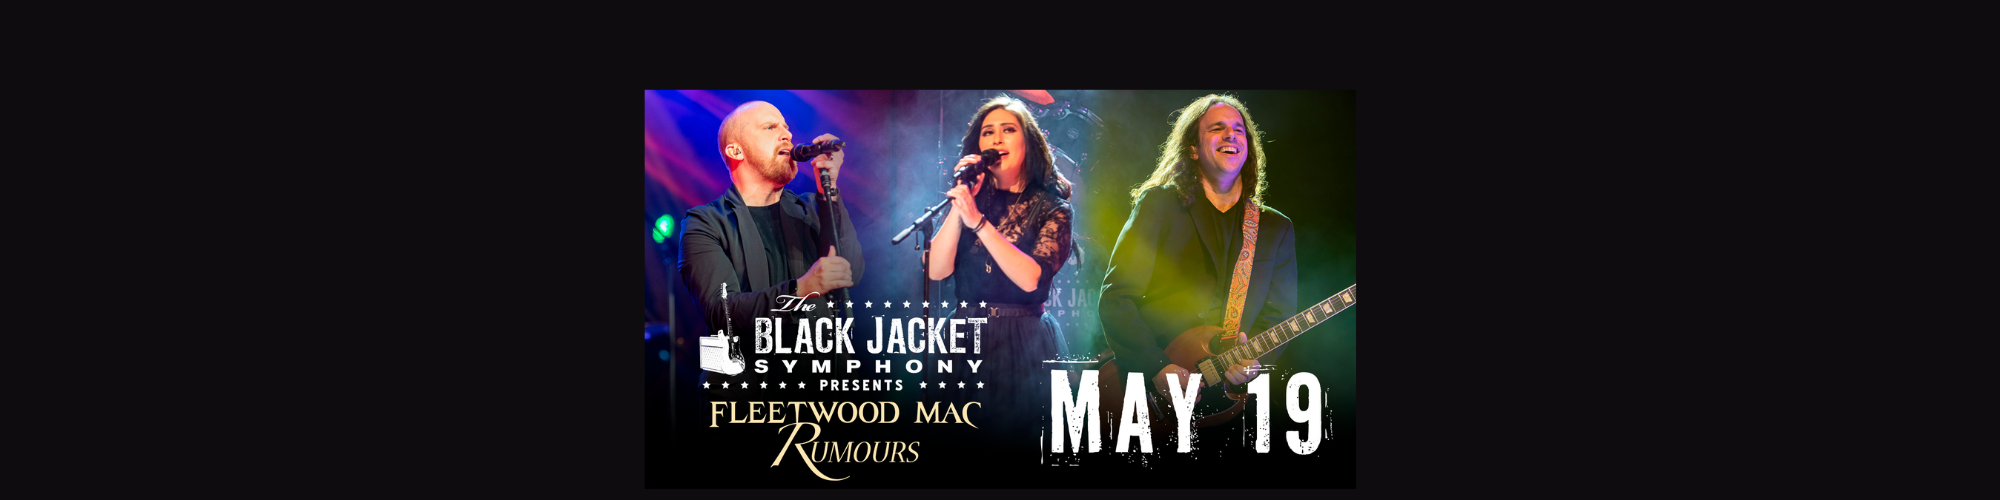 The Black Jacket Symphony presents Fleetwood Mac’s “Rumours”